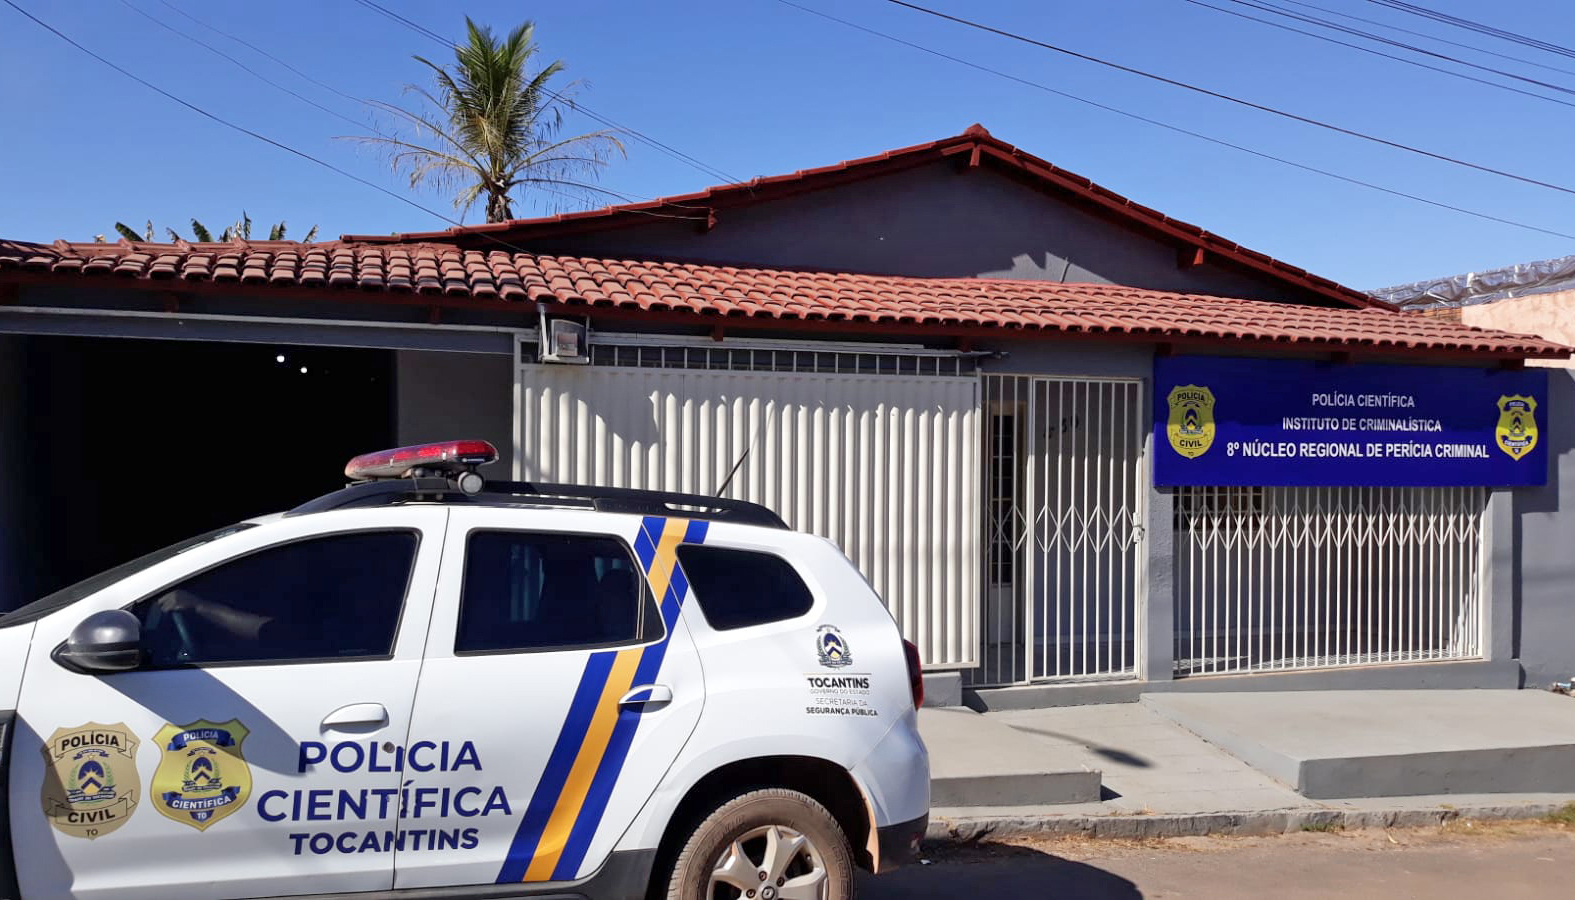 Governo entrega nova sede do Núcleo Regional de Perícia Criminal de Dianópolis (TO)